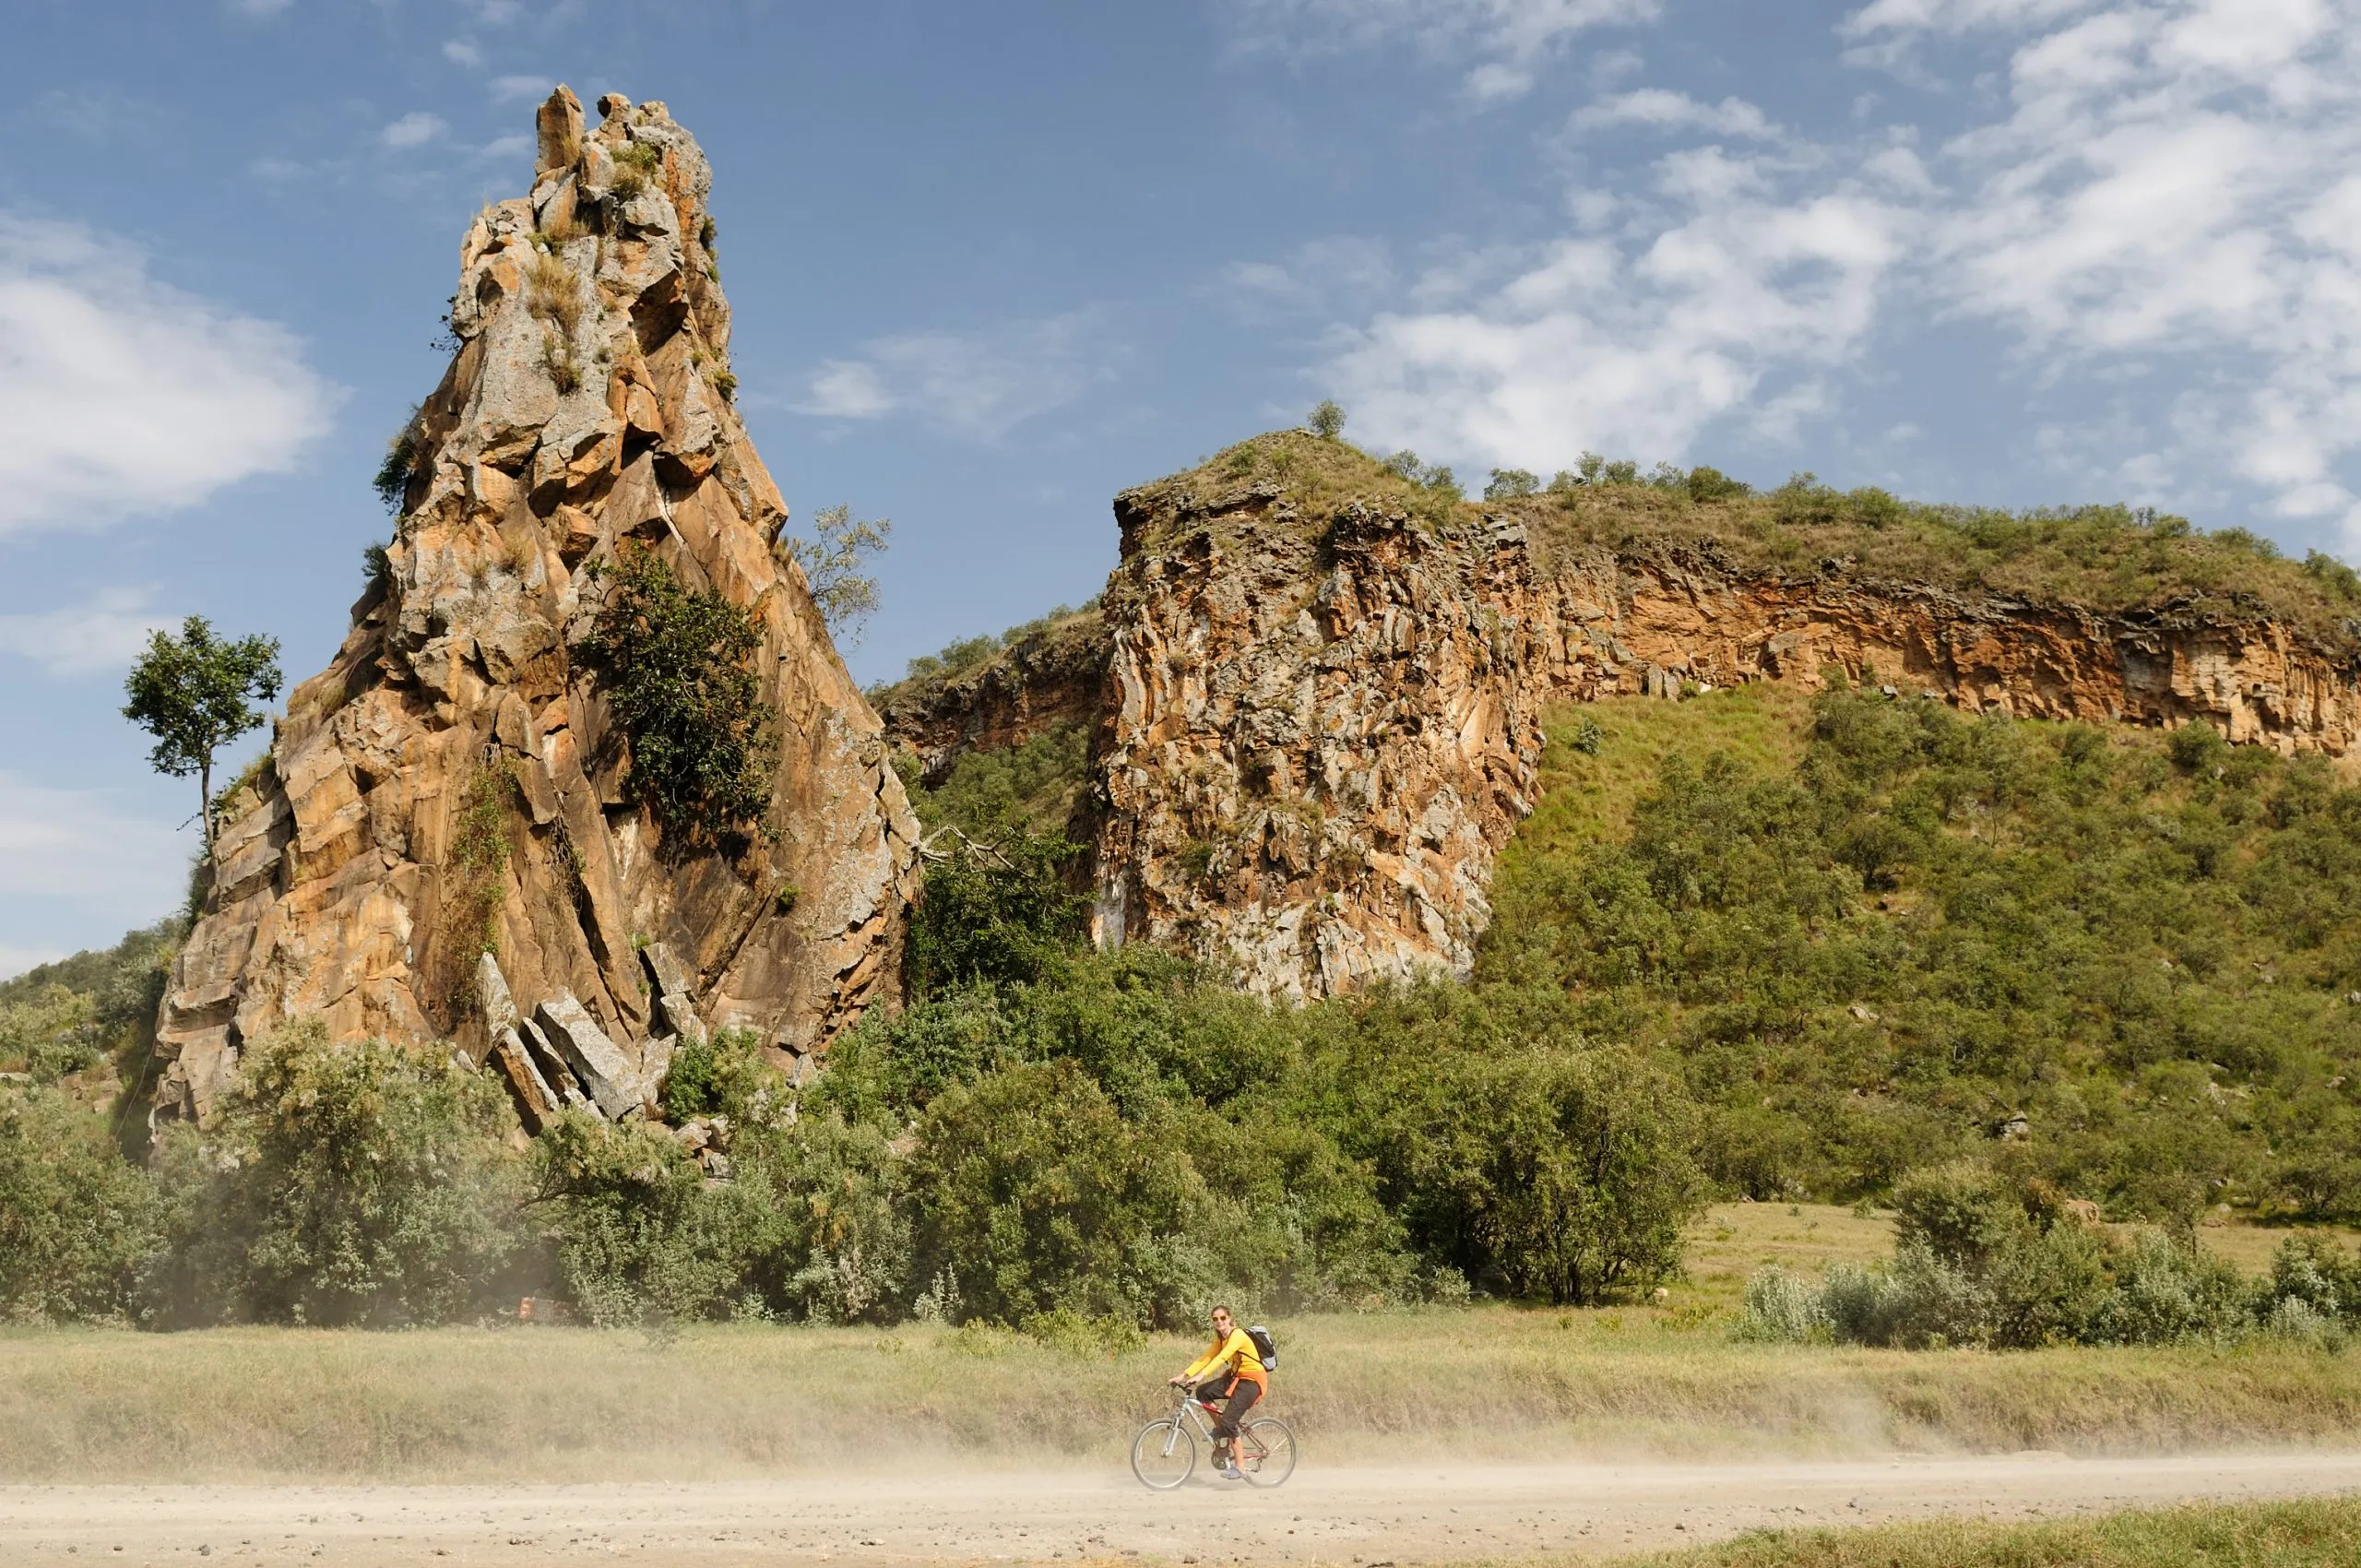 Turisten sykler ved foten av Stark Rock-tårnene i Hells Gate nasjonalpark i Kenya.